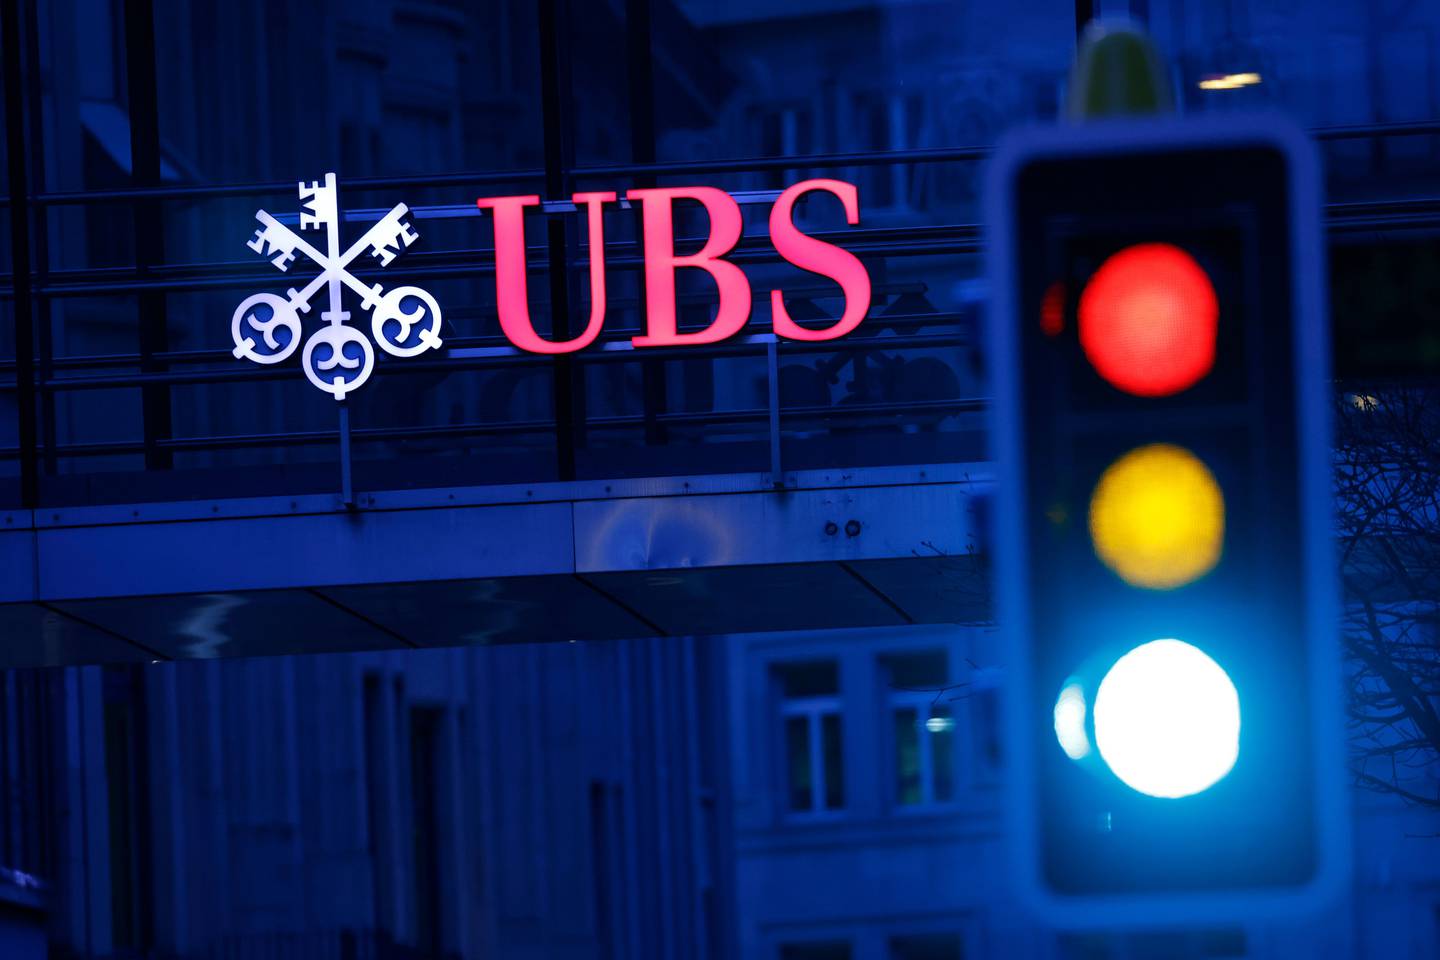 El movimiento, según UBS, se produce "a la luz de las acciones corporativas excepcionales anunciadas el 19 de marzo de 2023, poco después de la fecha de emisión", dijo la institución en el comunicado